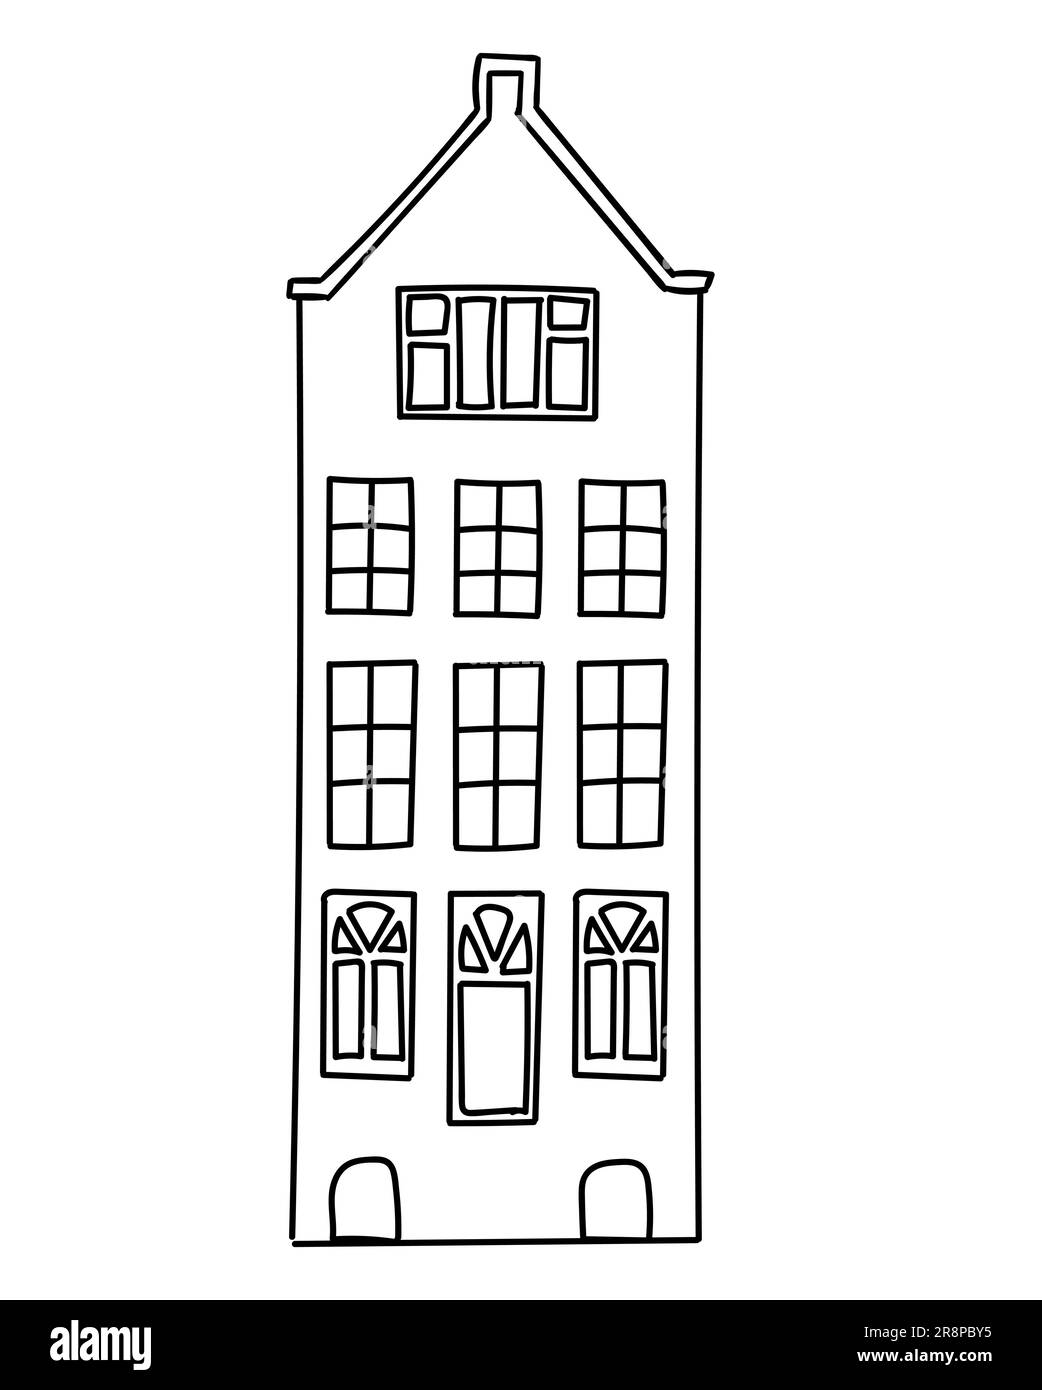 Doodle skizzieren Amsterdam altes Haus im niederländischen Stil. Historische Fassade. Traditionelle Architektur der Niederlande. Vektor-Illustration flach Cartoon Stil Stock Vektor